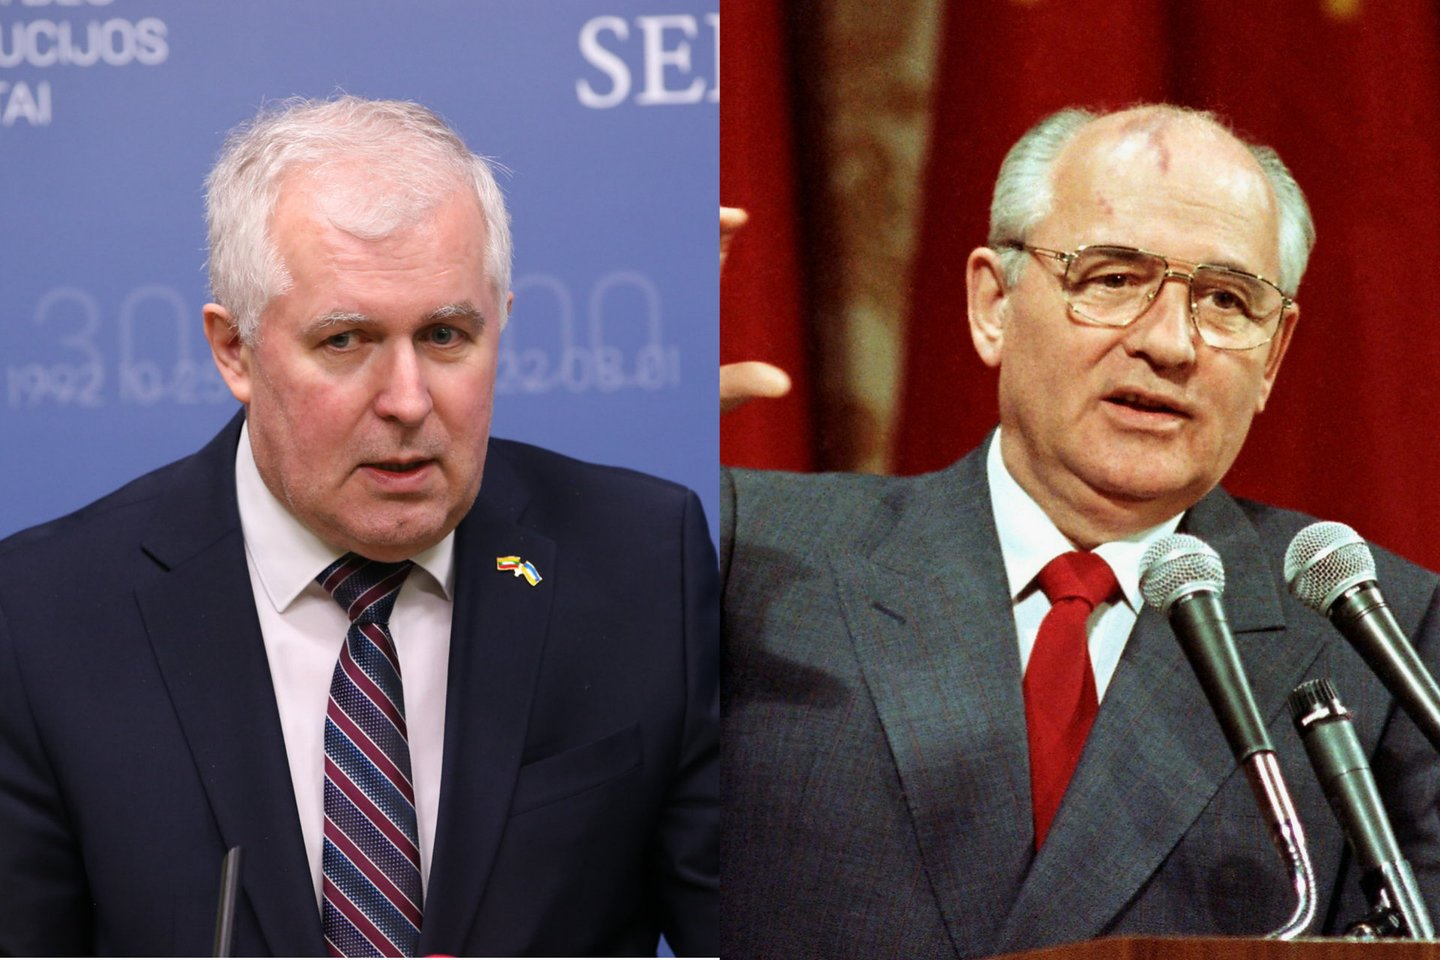  A.Anušauskas pabrėžė M.Gorbačiovo veiksmus, kai Vilniuje vyko taikūs protestai.<br> lrytas.lt koliažas.